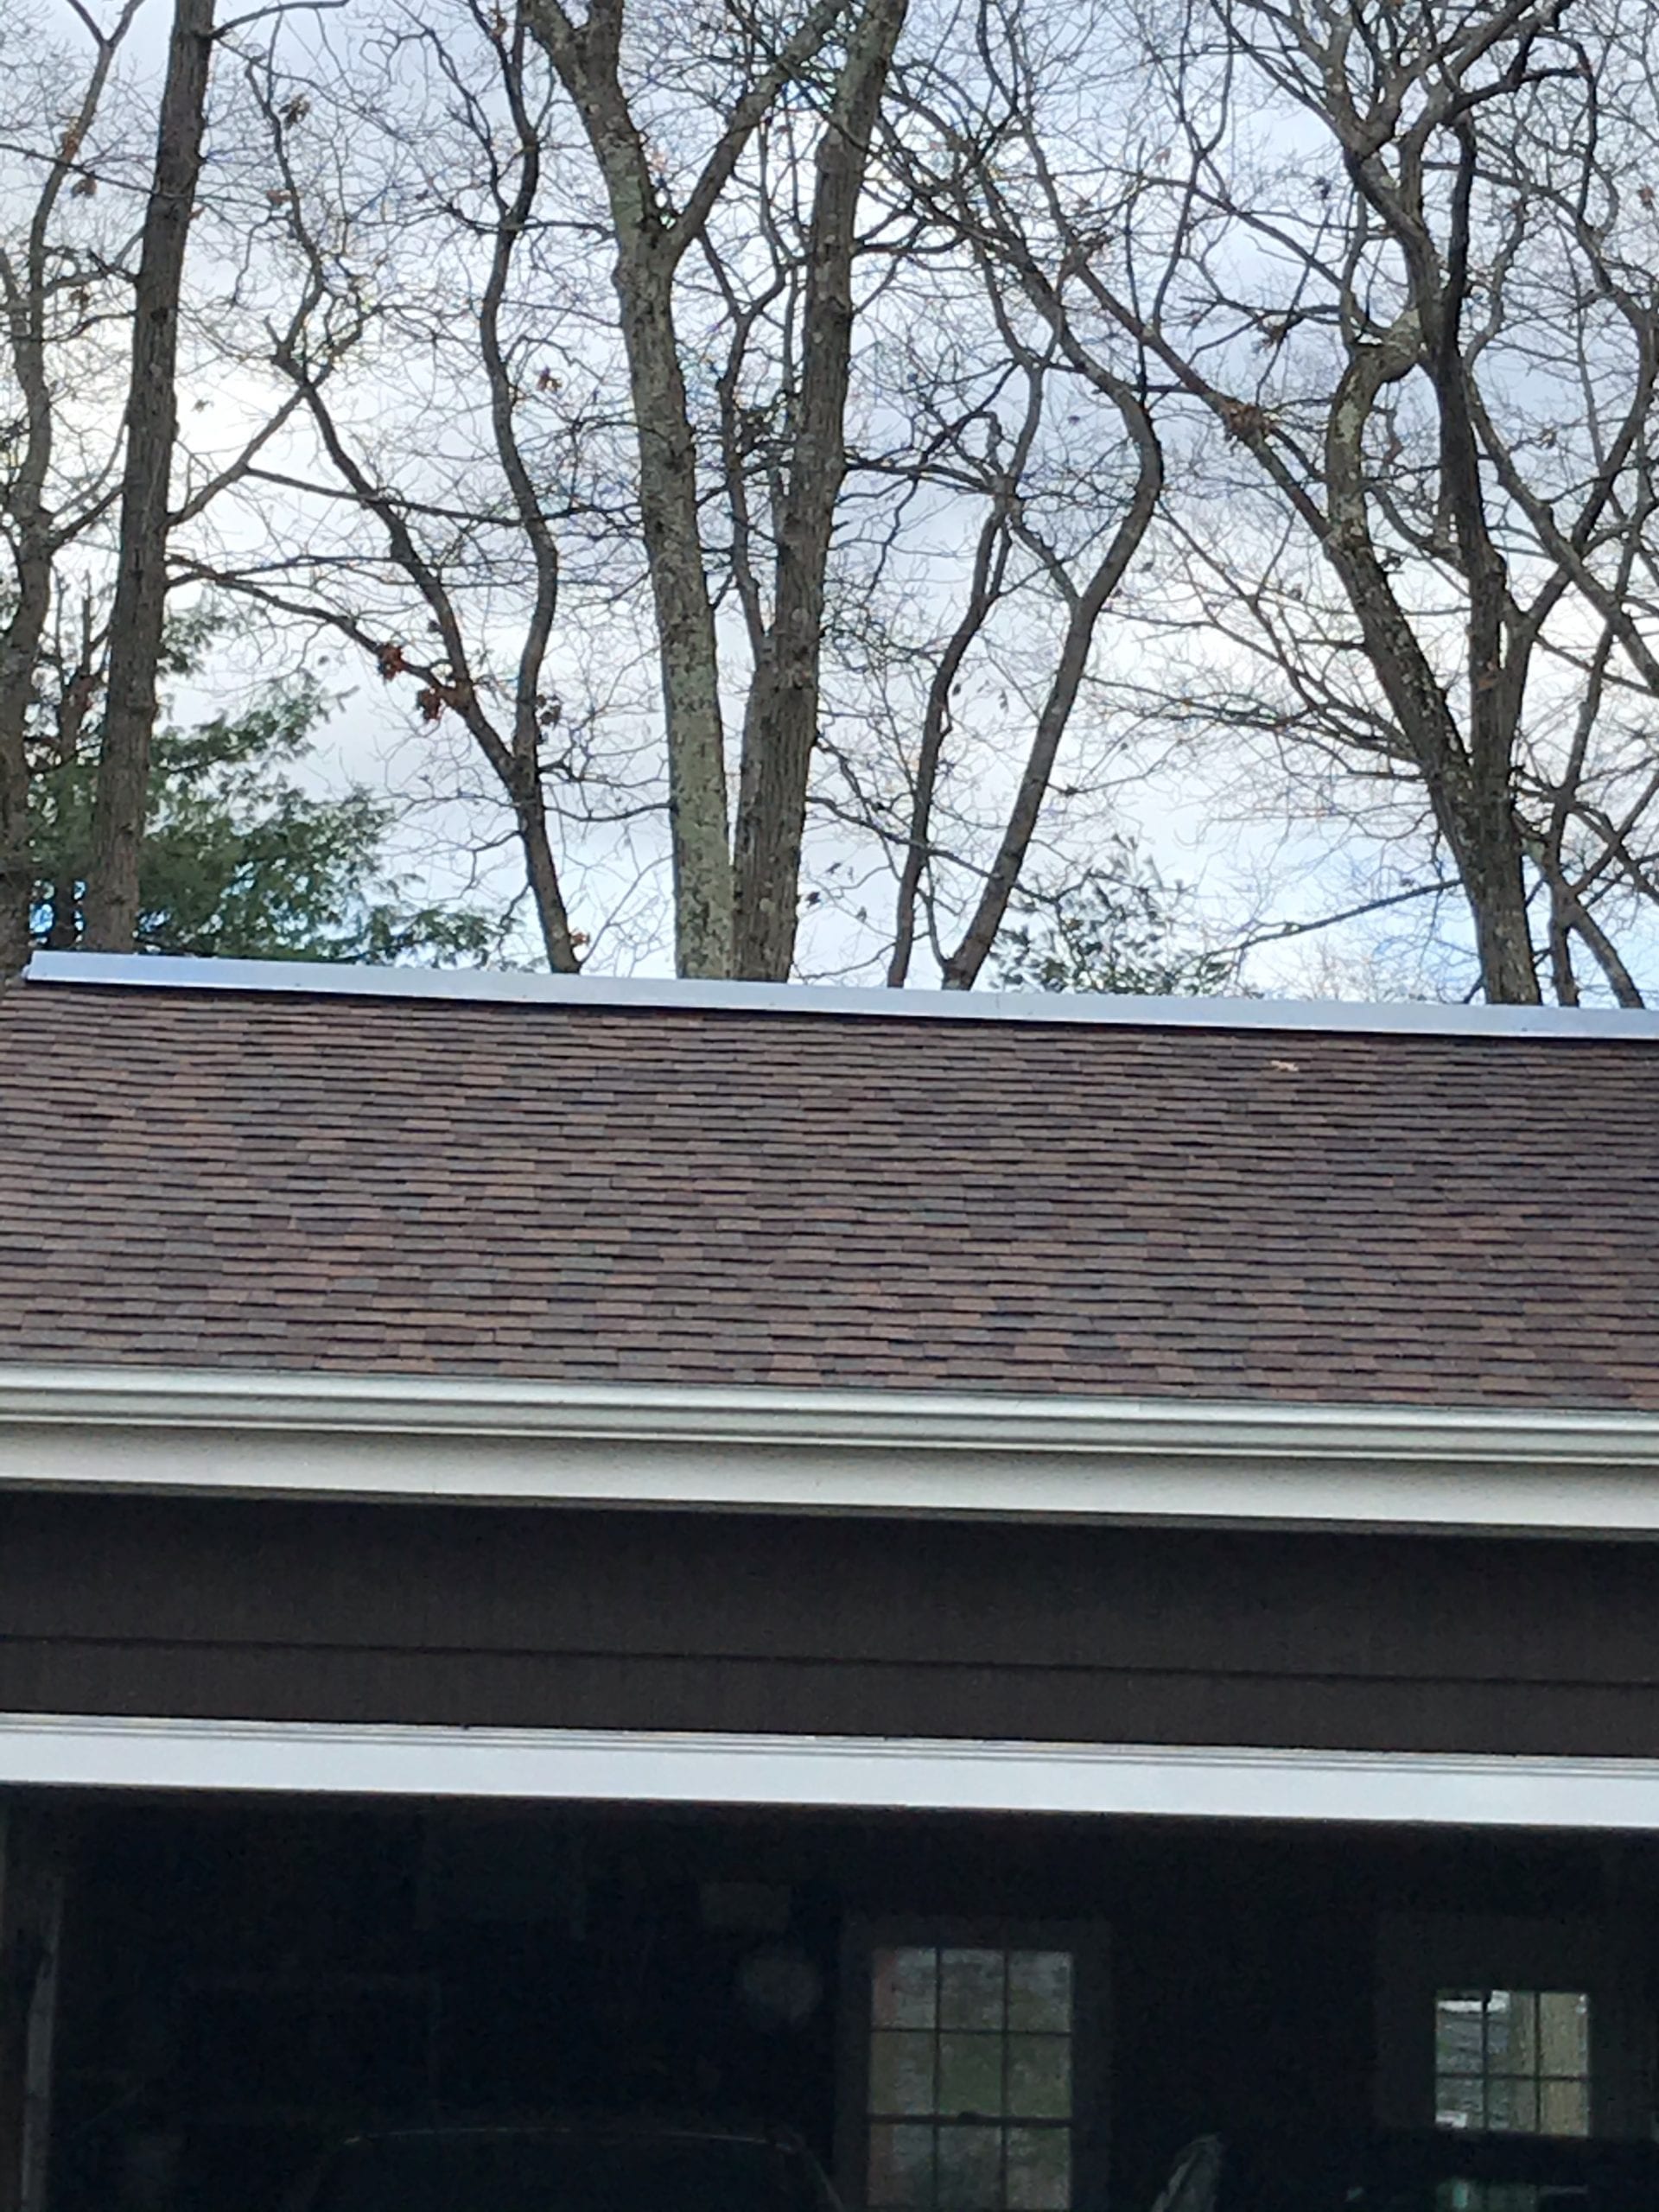 Asphalt shingle roof installed onto a home.